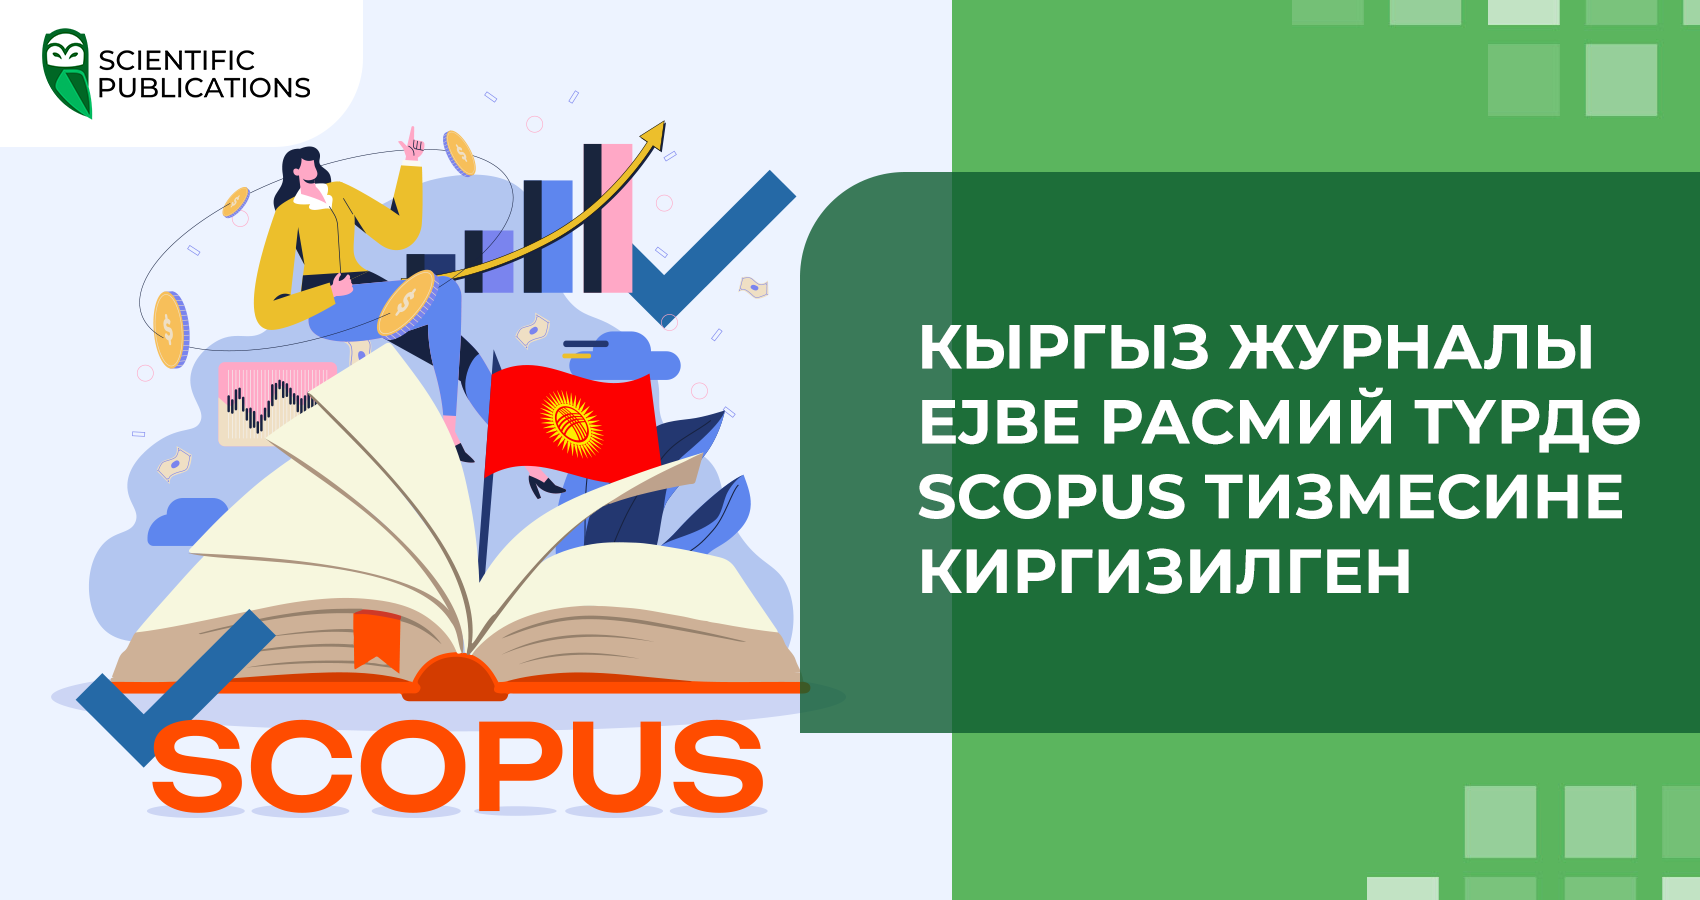 Кыргыз журналы Eurasian Journal of Business and Economics (EJBE) расмий түрдө Scopus тизмесине киргизилген